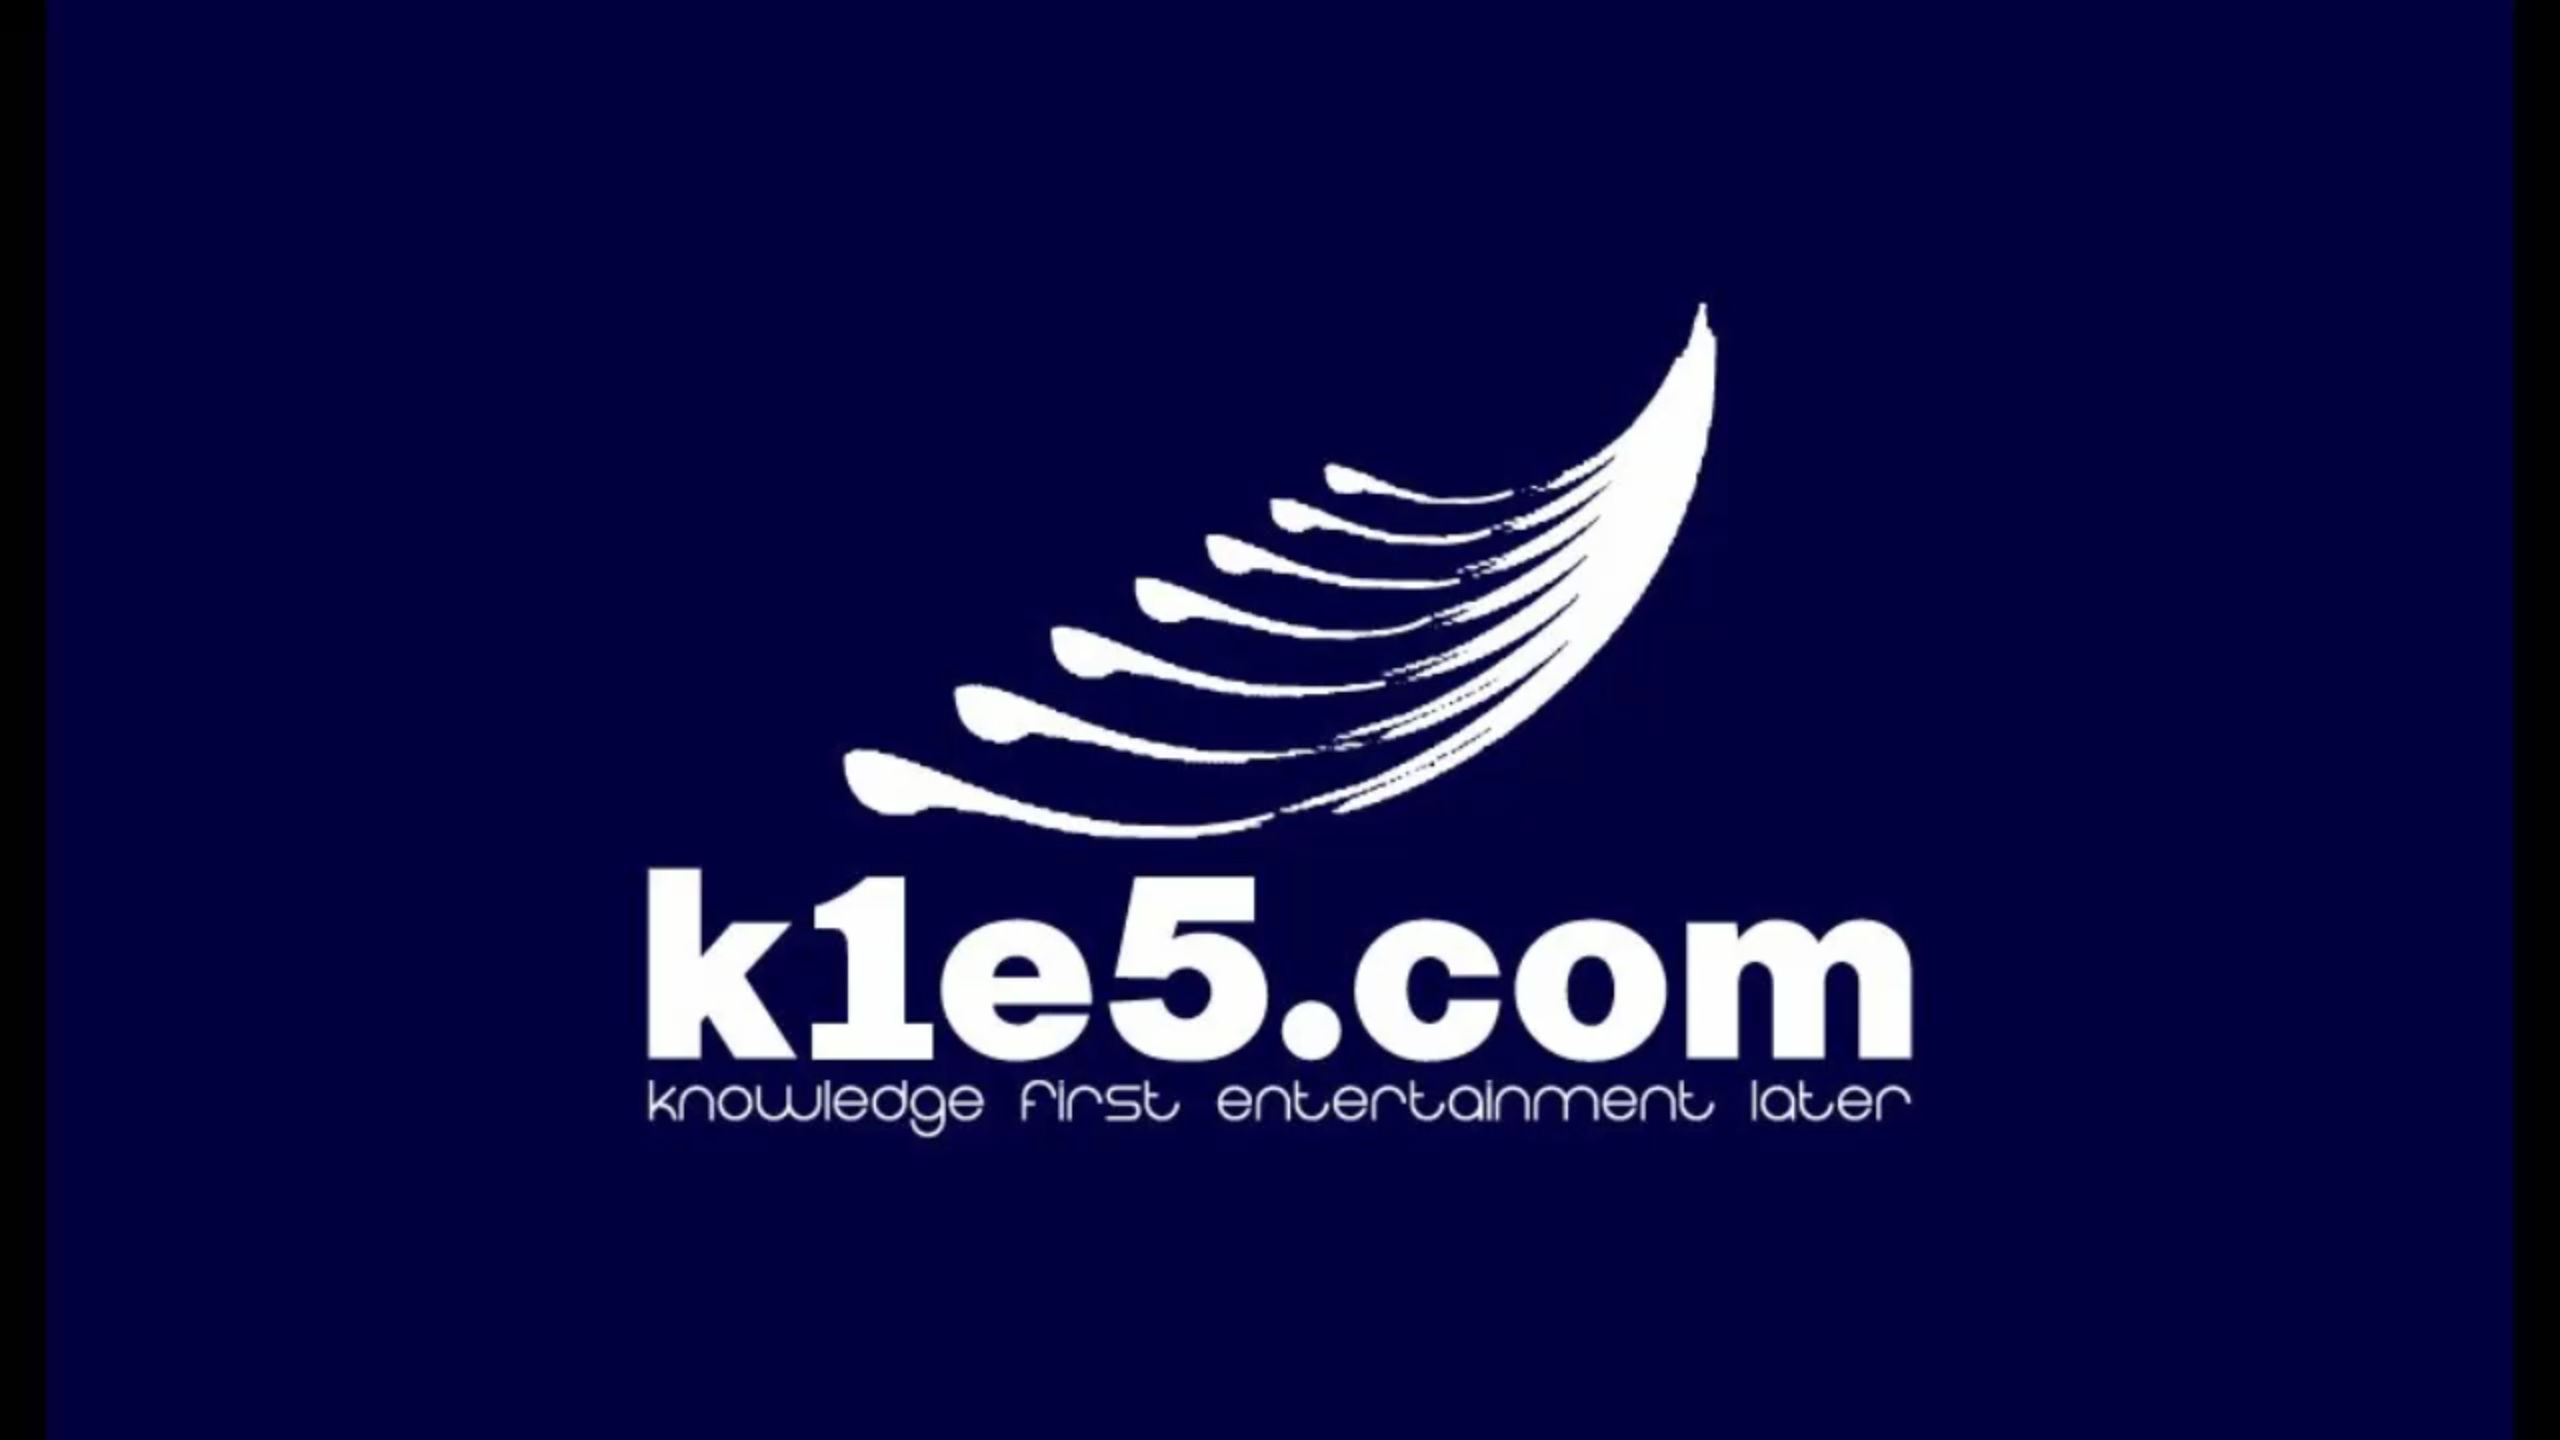 K1E5 Logo 2560 x 1440 PNG.png